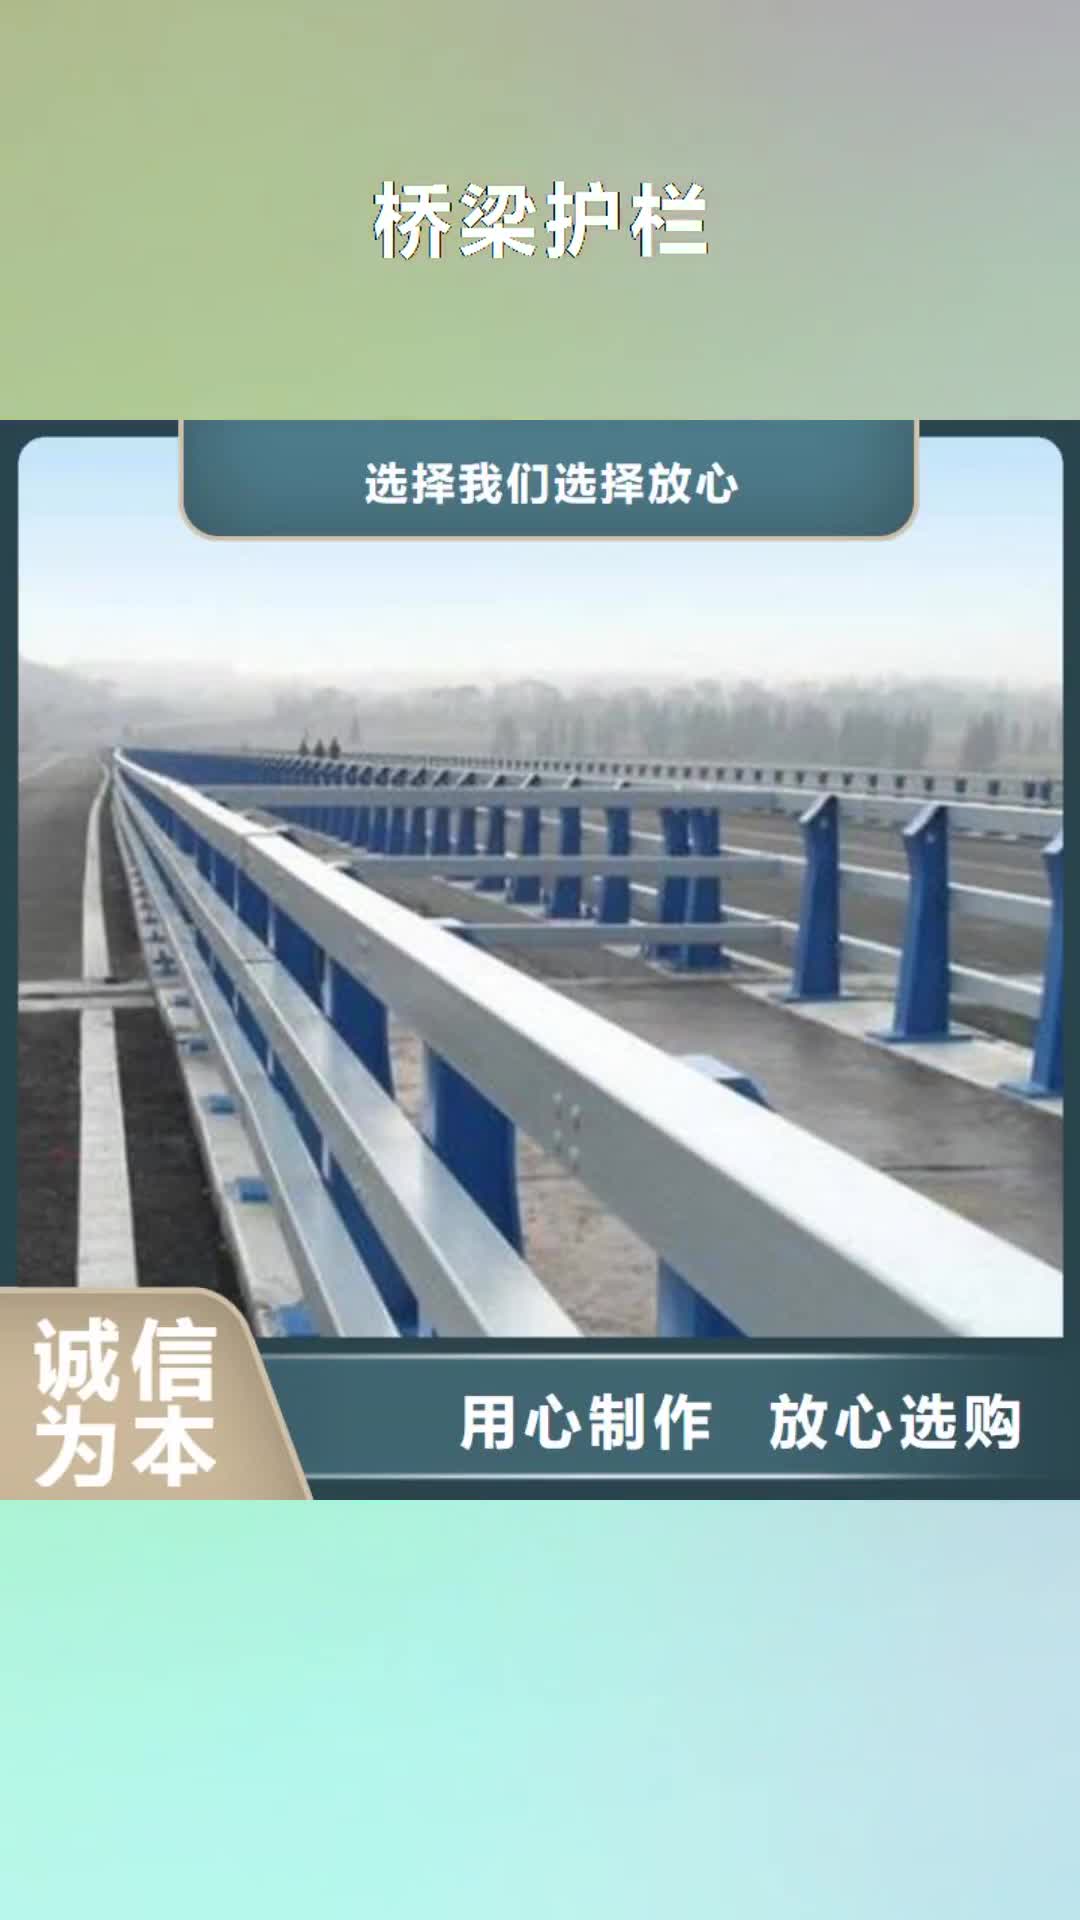 【吉林 桥梁护栏_不锈钢桥梁护栏质检严格放心品质】